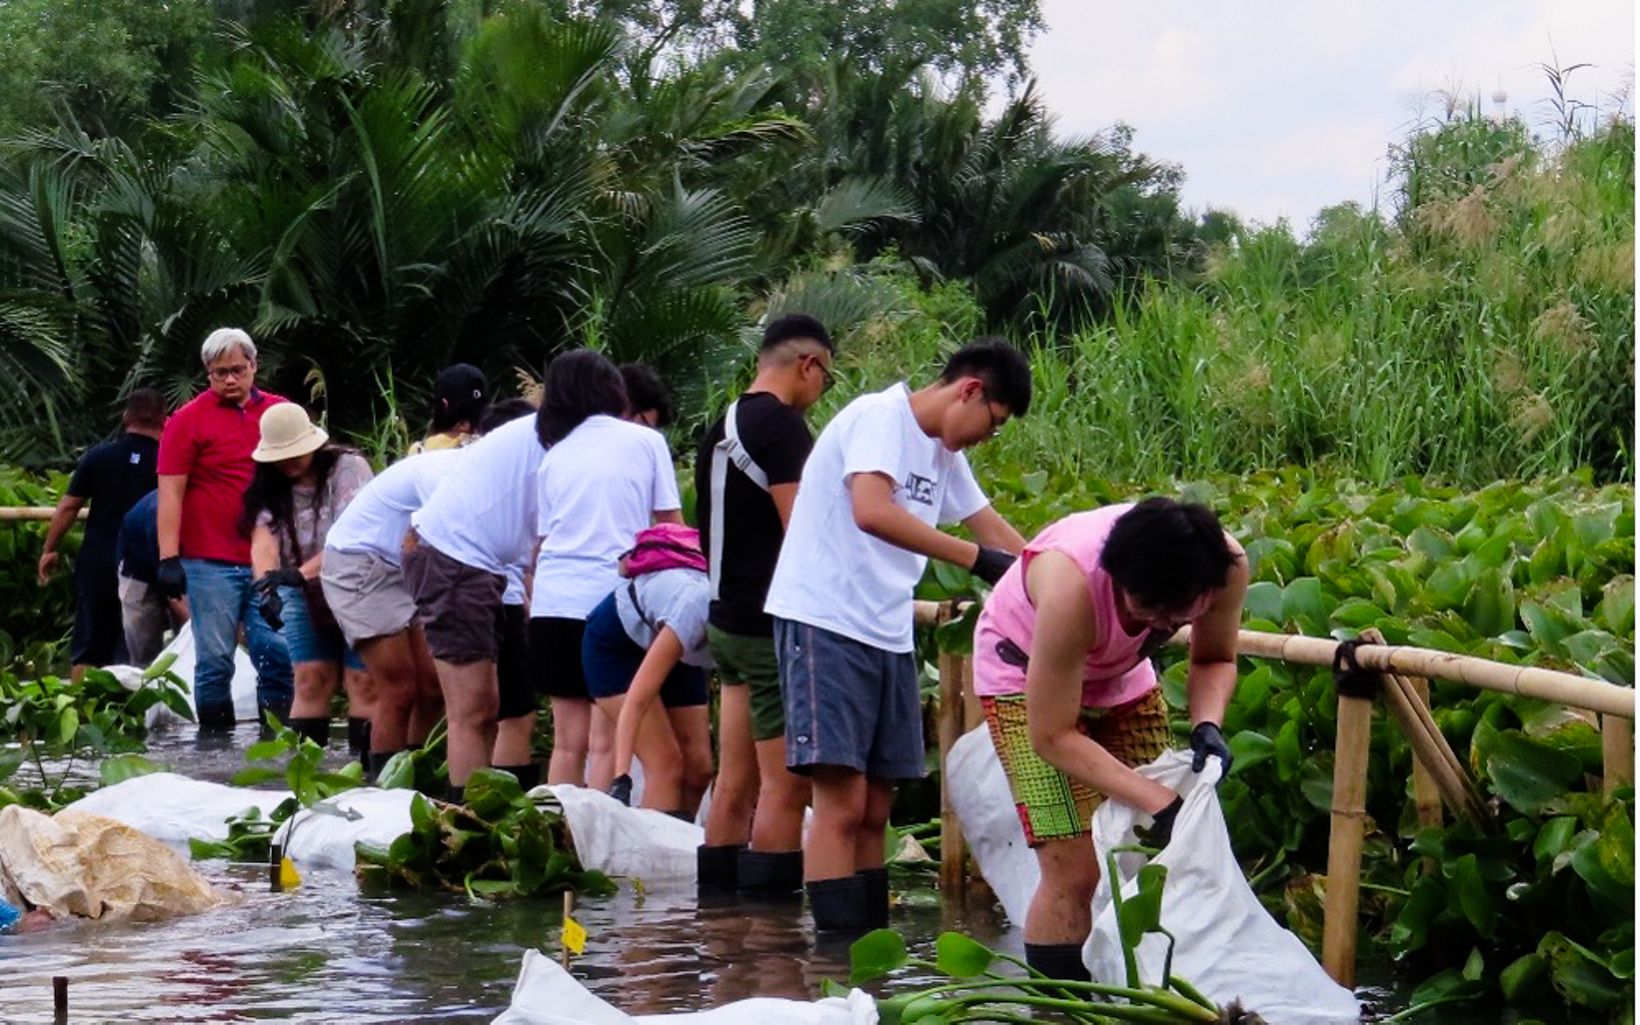 
                
                  Keterangan Foto Balai Konservasi Sumber Daya Alam (BKSDA) Jakarta bersama Yayasan Konservasi Alam Nusantara (YKAN) dan Disney menanam melakukan kegiatan penanaman mangrove dan Ngobrol Santai Konservasi (Ngonser) di Suaka Margasatwa (SM) Muara Angke dengan tema “Melestarikan Mangrove, Melestarikan Kehidupan”, pada Sabtu (21/1). Dalam kesempatan ini juga dilakukan kegiatan pembersihan tumbuhan invasif dan pembibitan mangrove. Kegiatan penyadartahuan menjadi salah satu cara yang rutin dilakukan BKSDA Jakarta, YKAN, dan bersama mitra untuk meningkatkan kepedulian dan mendorong para pihak terus bersama-sama melakukan pemulihan dan perbaikan lingkungan.
                  © A Yoseph Wihartono/YKAN
                
              